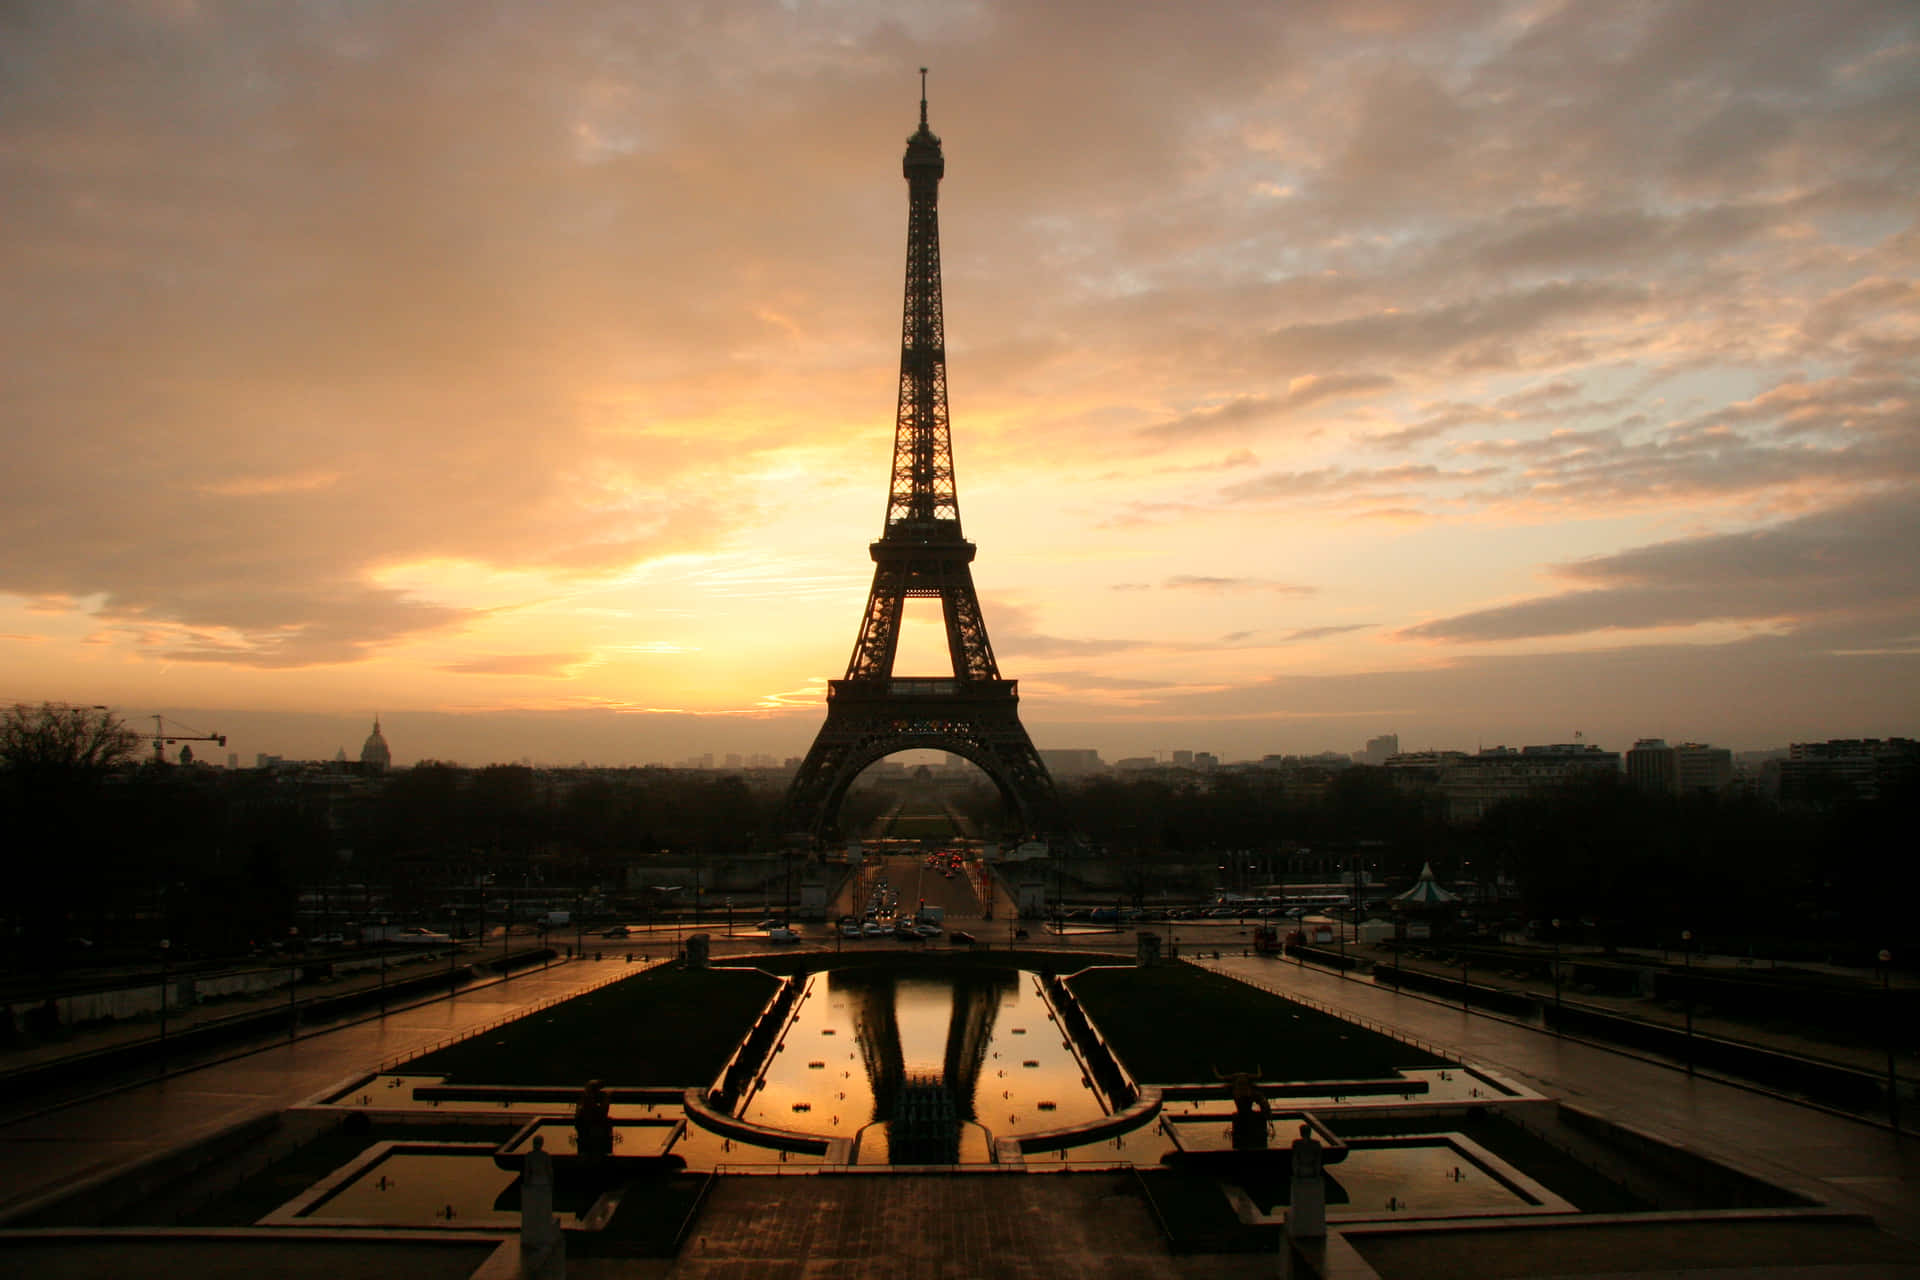 Imagende La Torre Eiffel En Una Noche Iluminada.